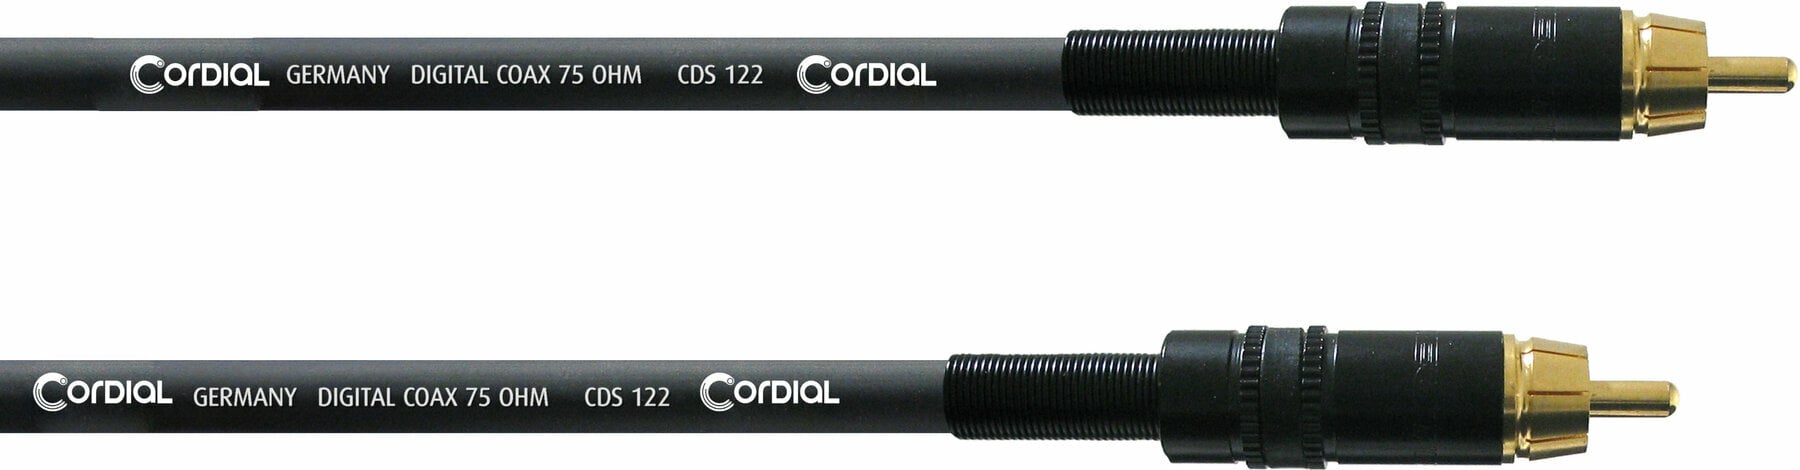 Audió kábel Cordial CPDS 1 CC 1 m Audió kábel